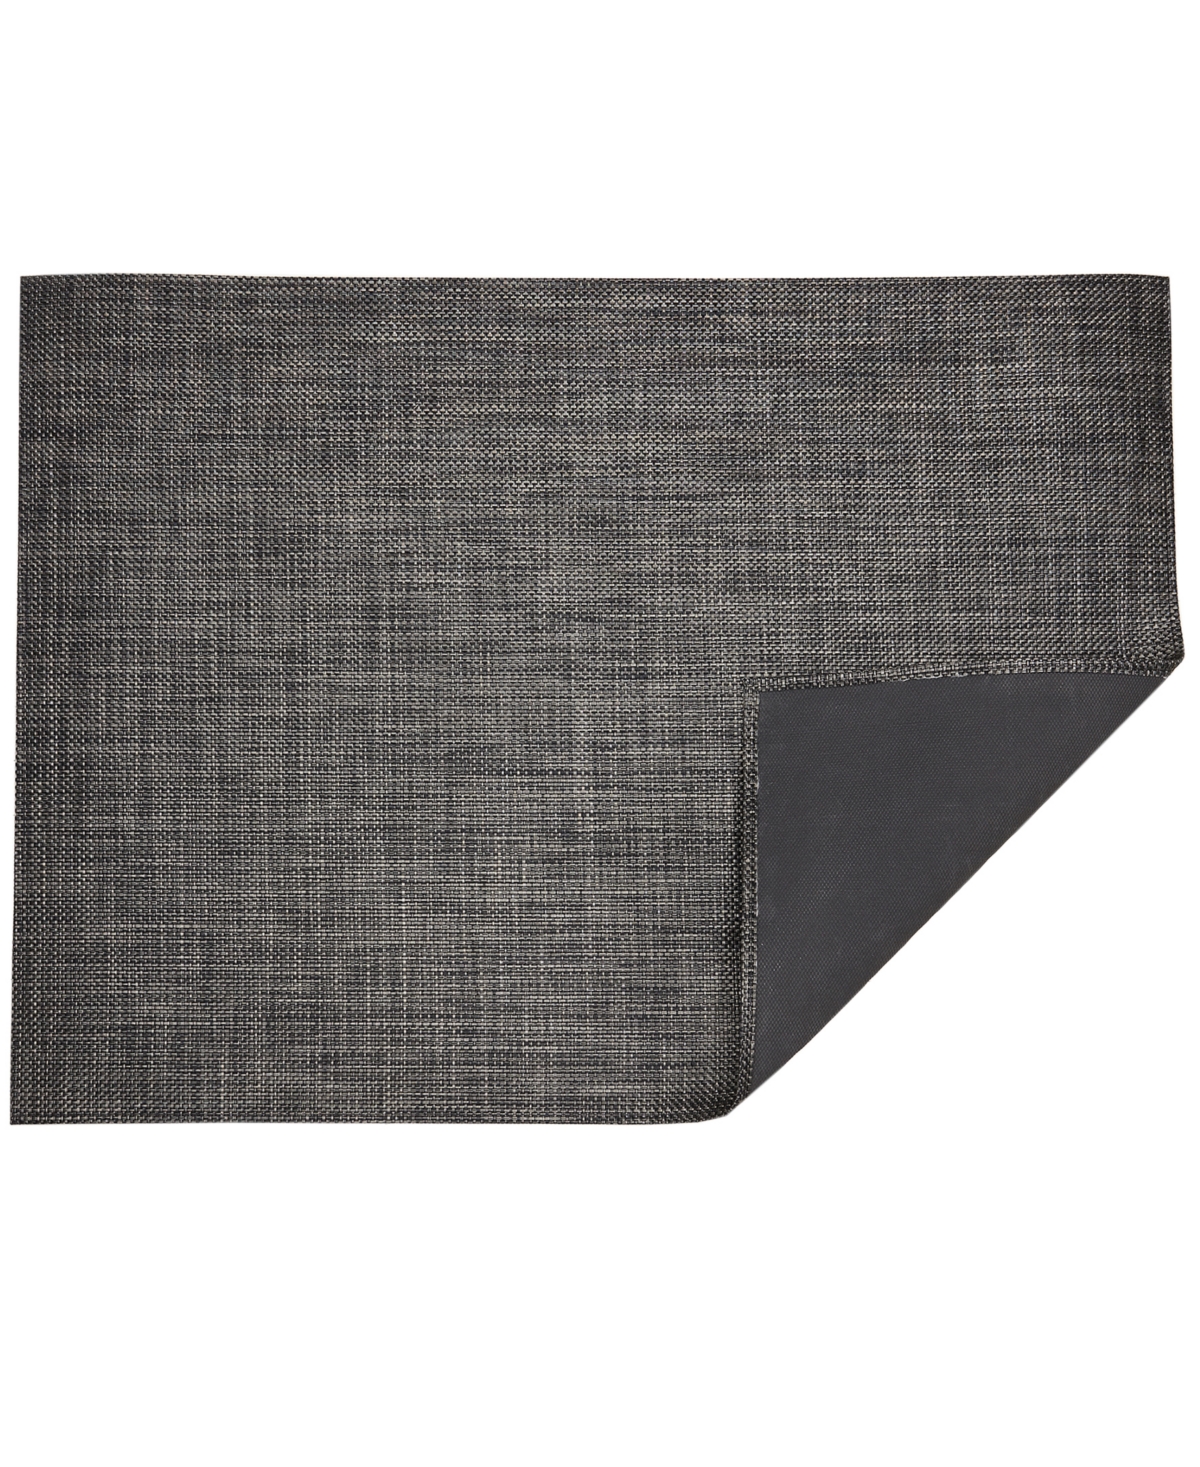 Basketweave Floormat, 46" x 72" - Carbon